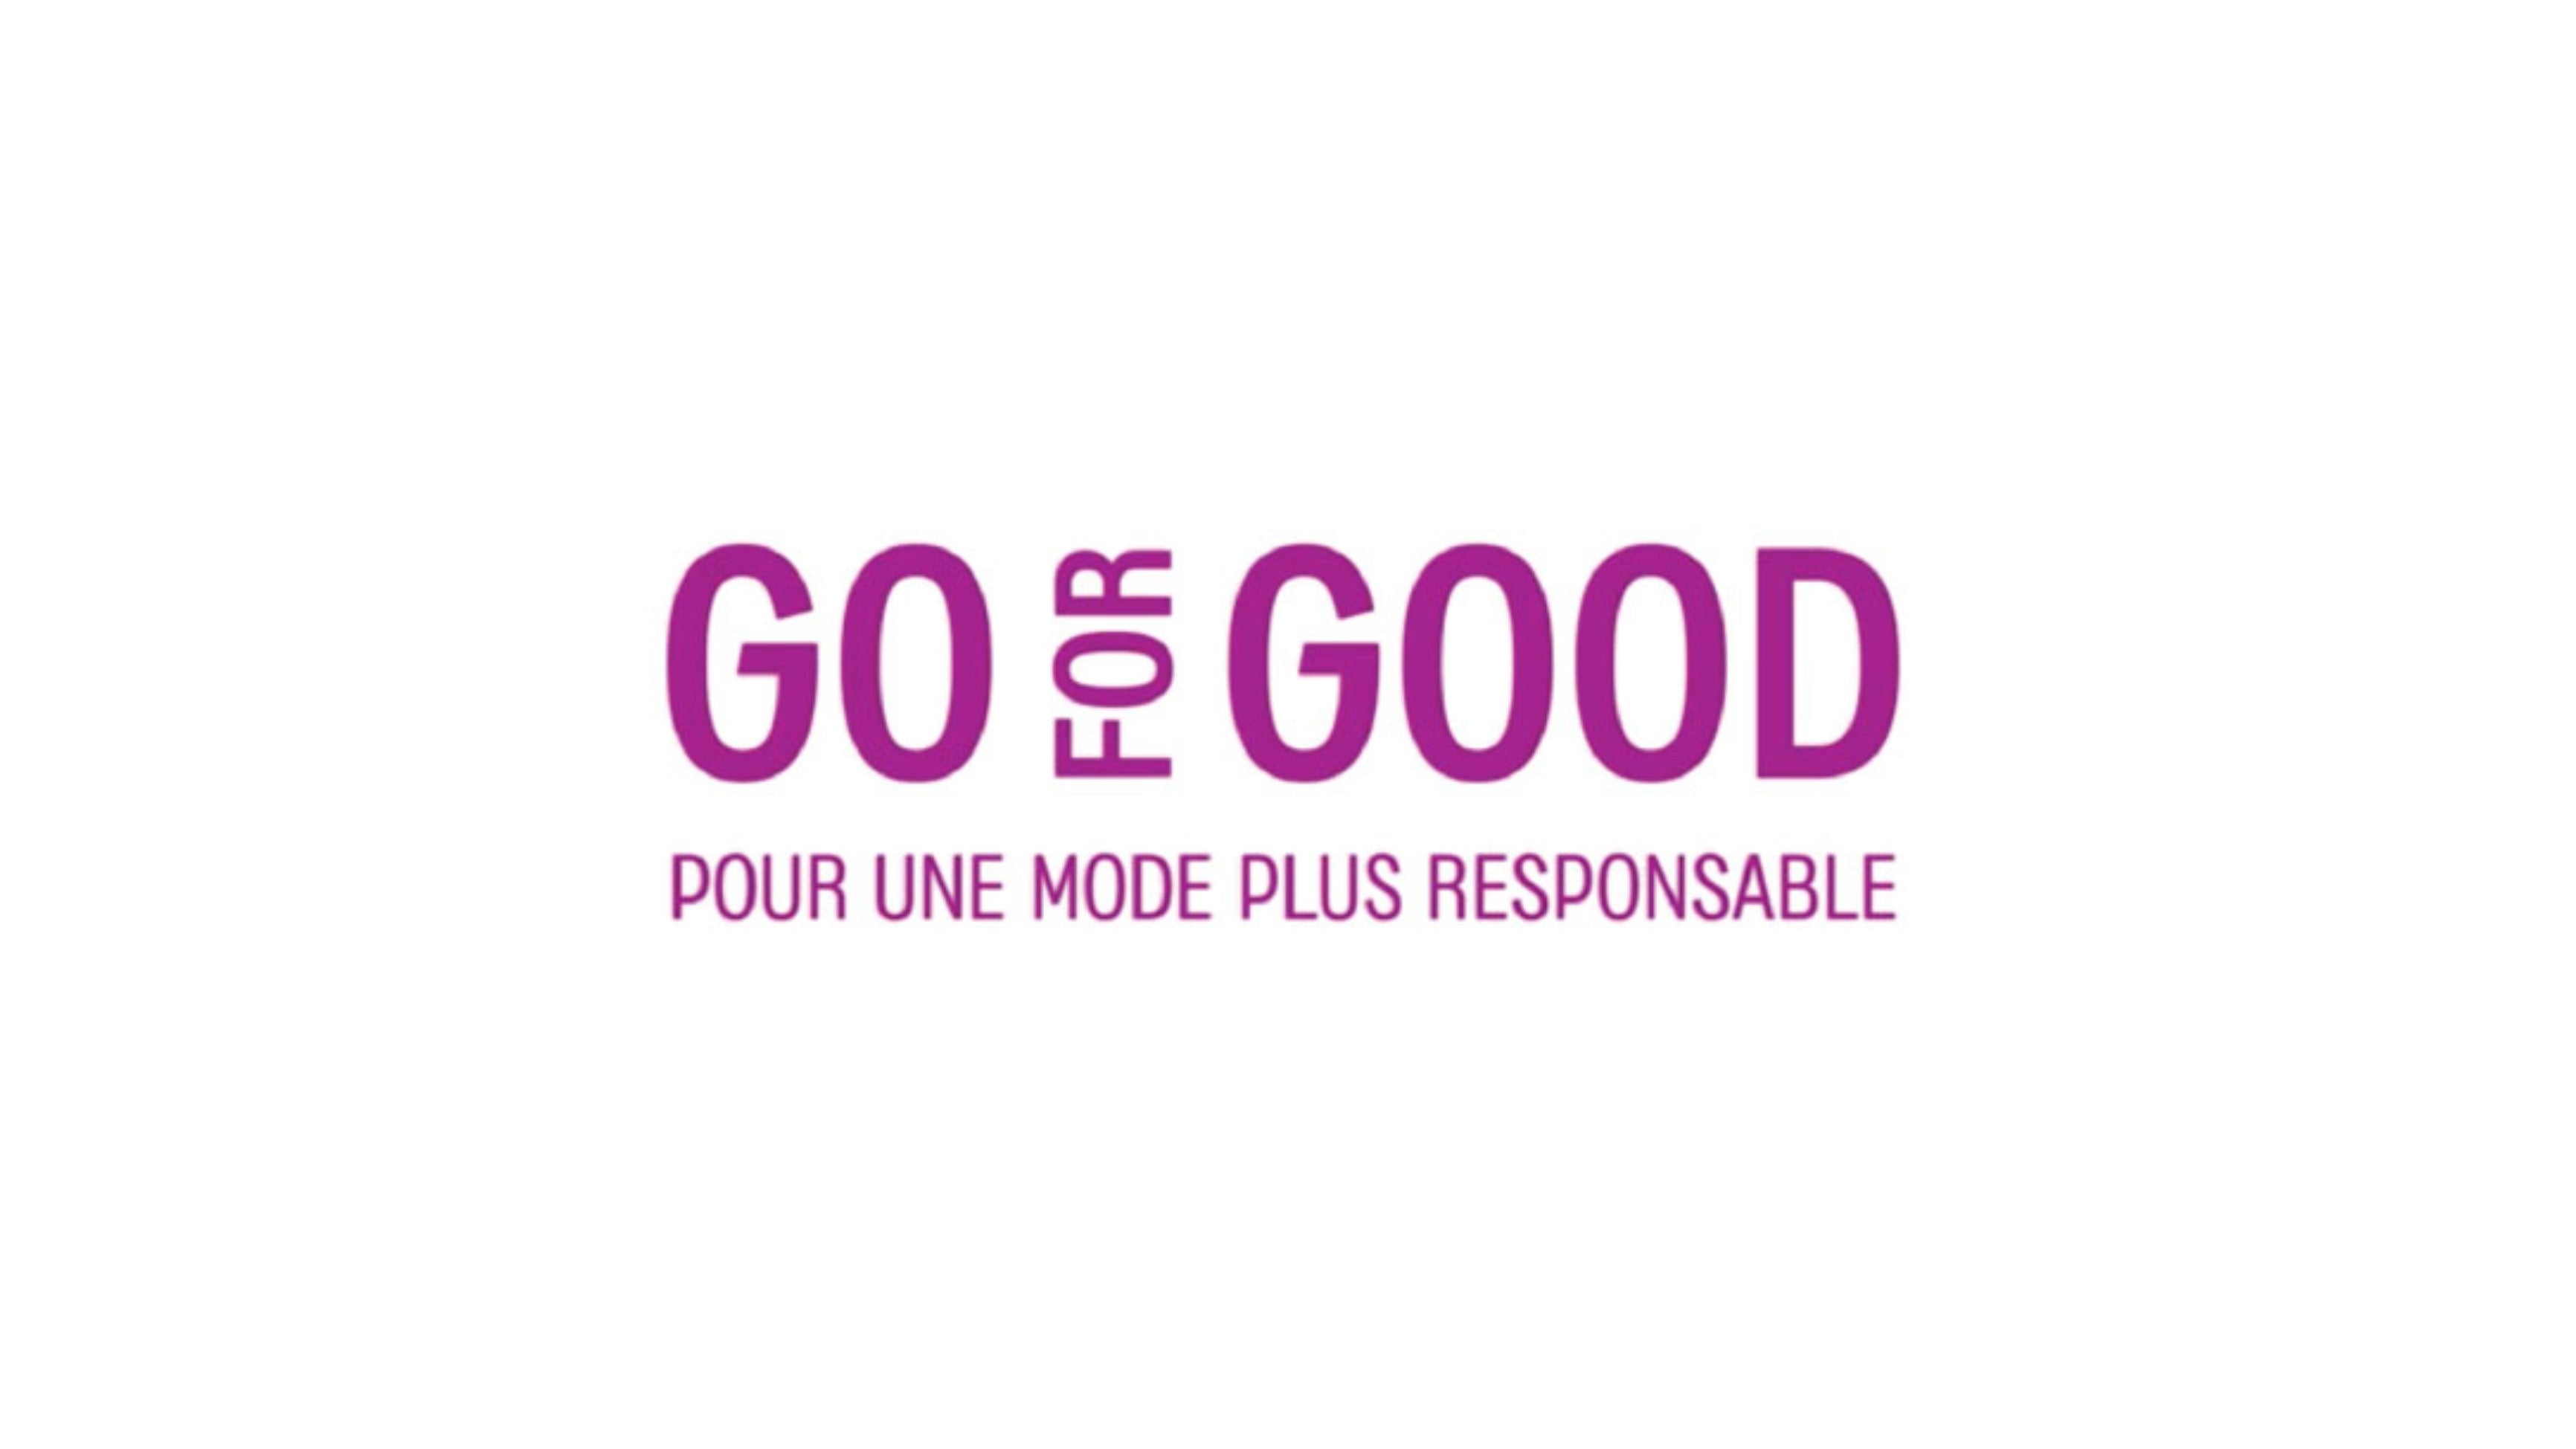 "GO FOR GOOD" PAR LES GALERIES LAFAYETTE